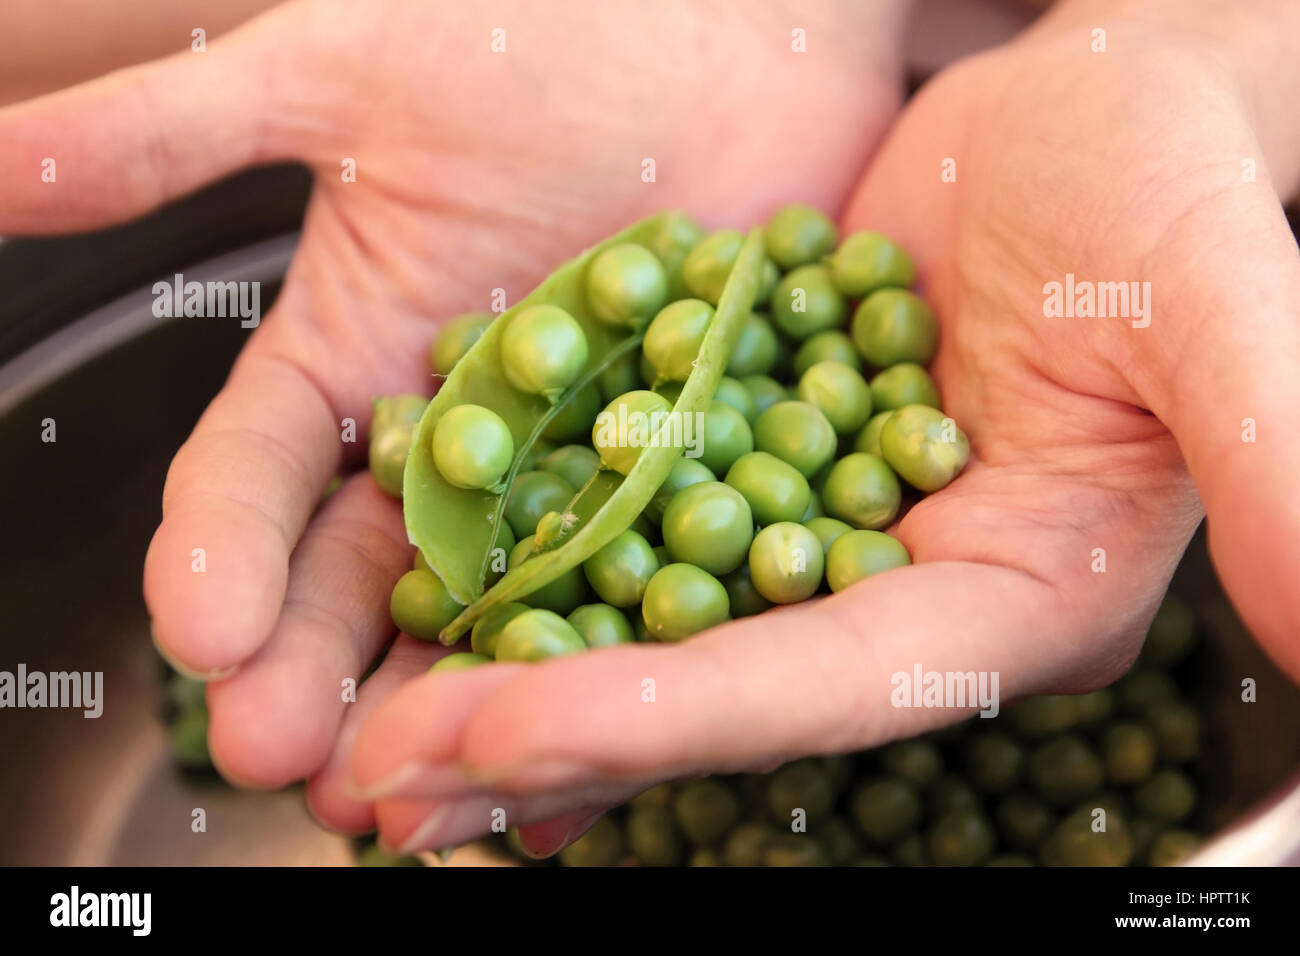 peas in hands Stock Photo